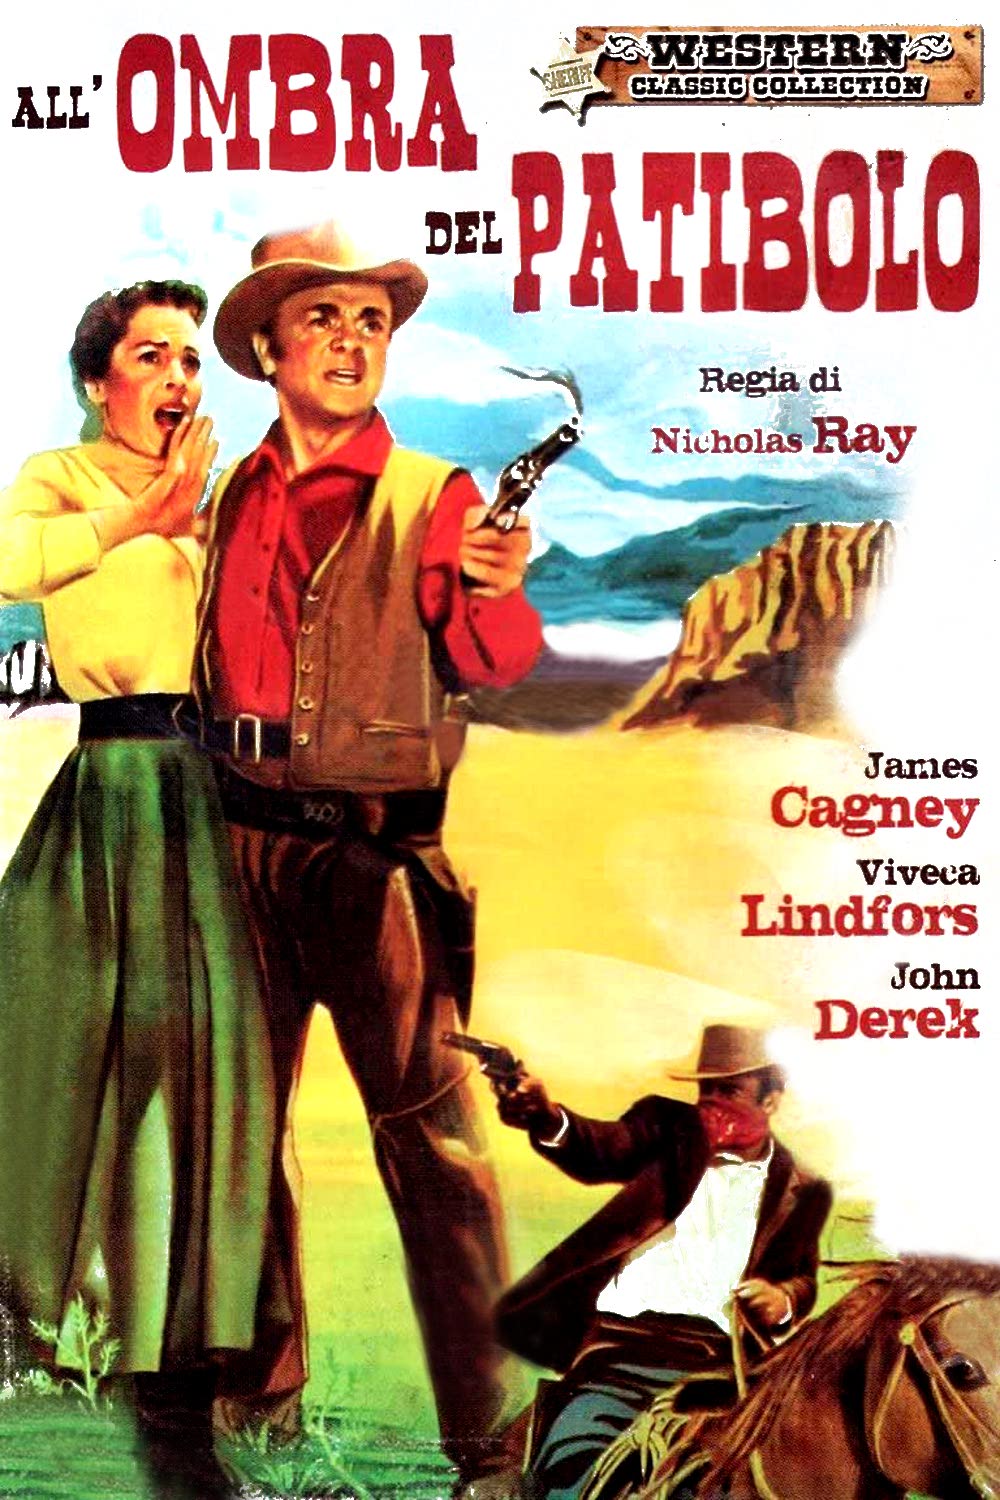 All’ombra del patibolo (1954)